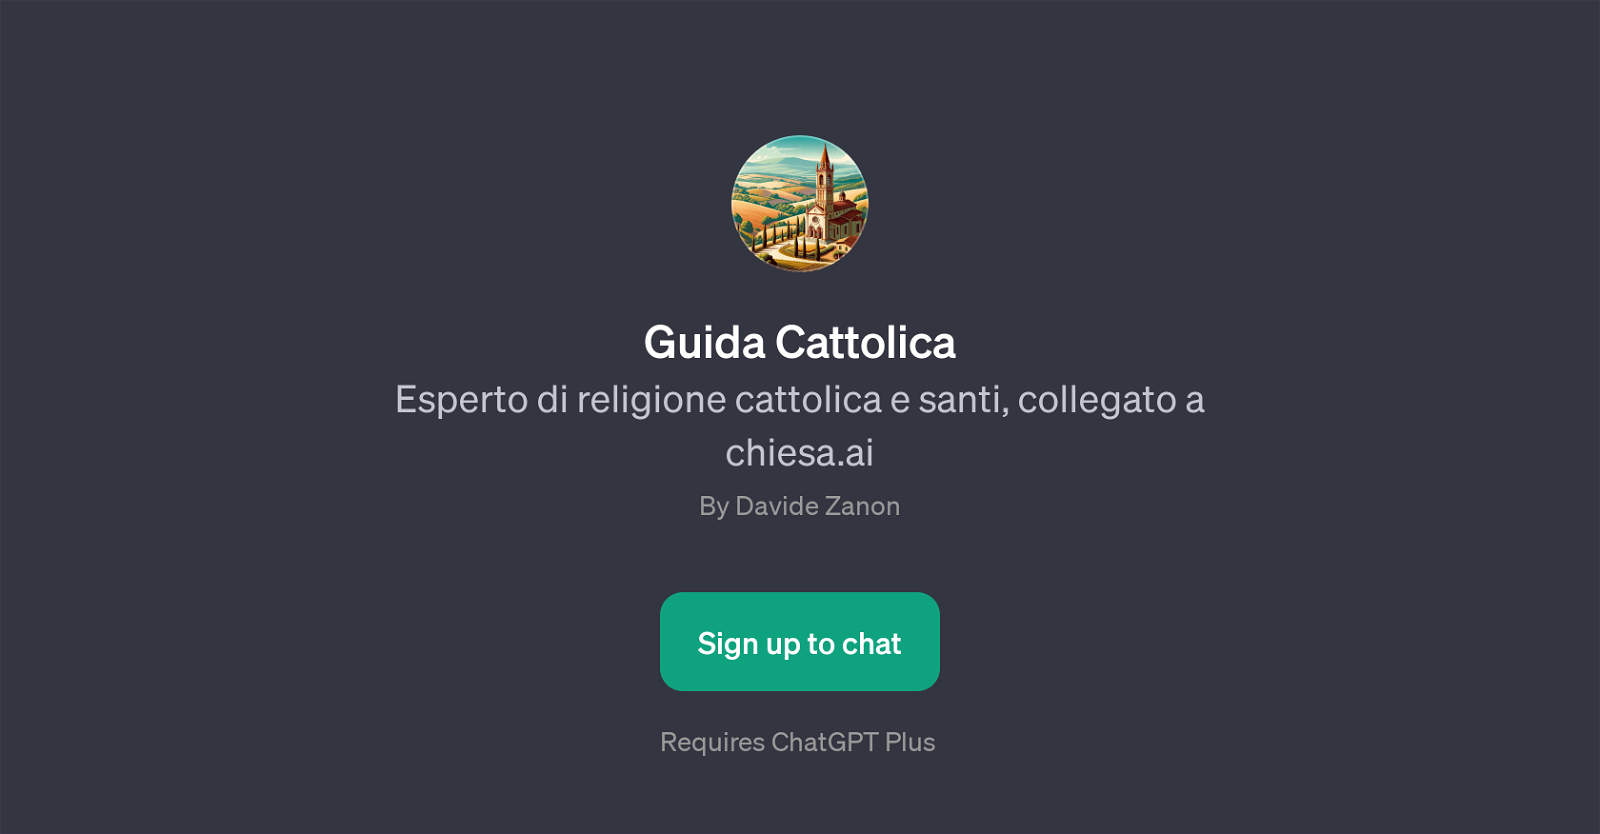 Guida Cattolica website